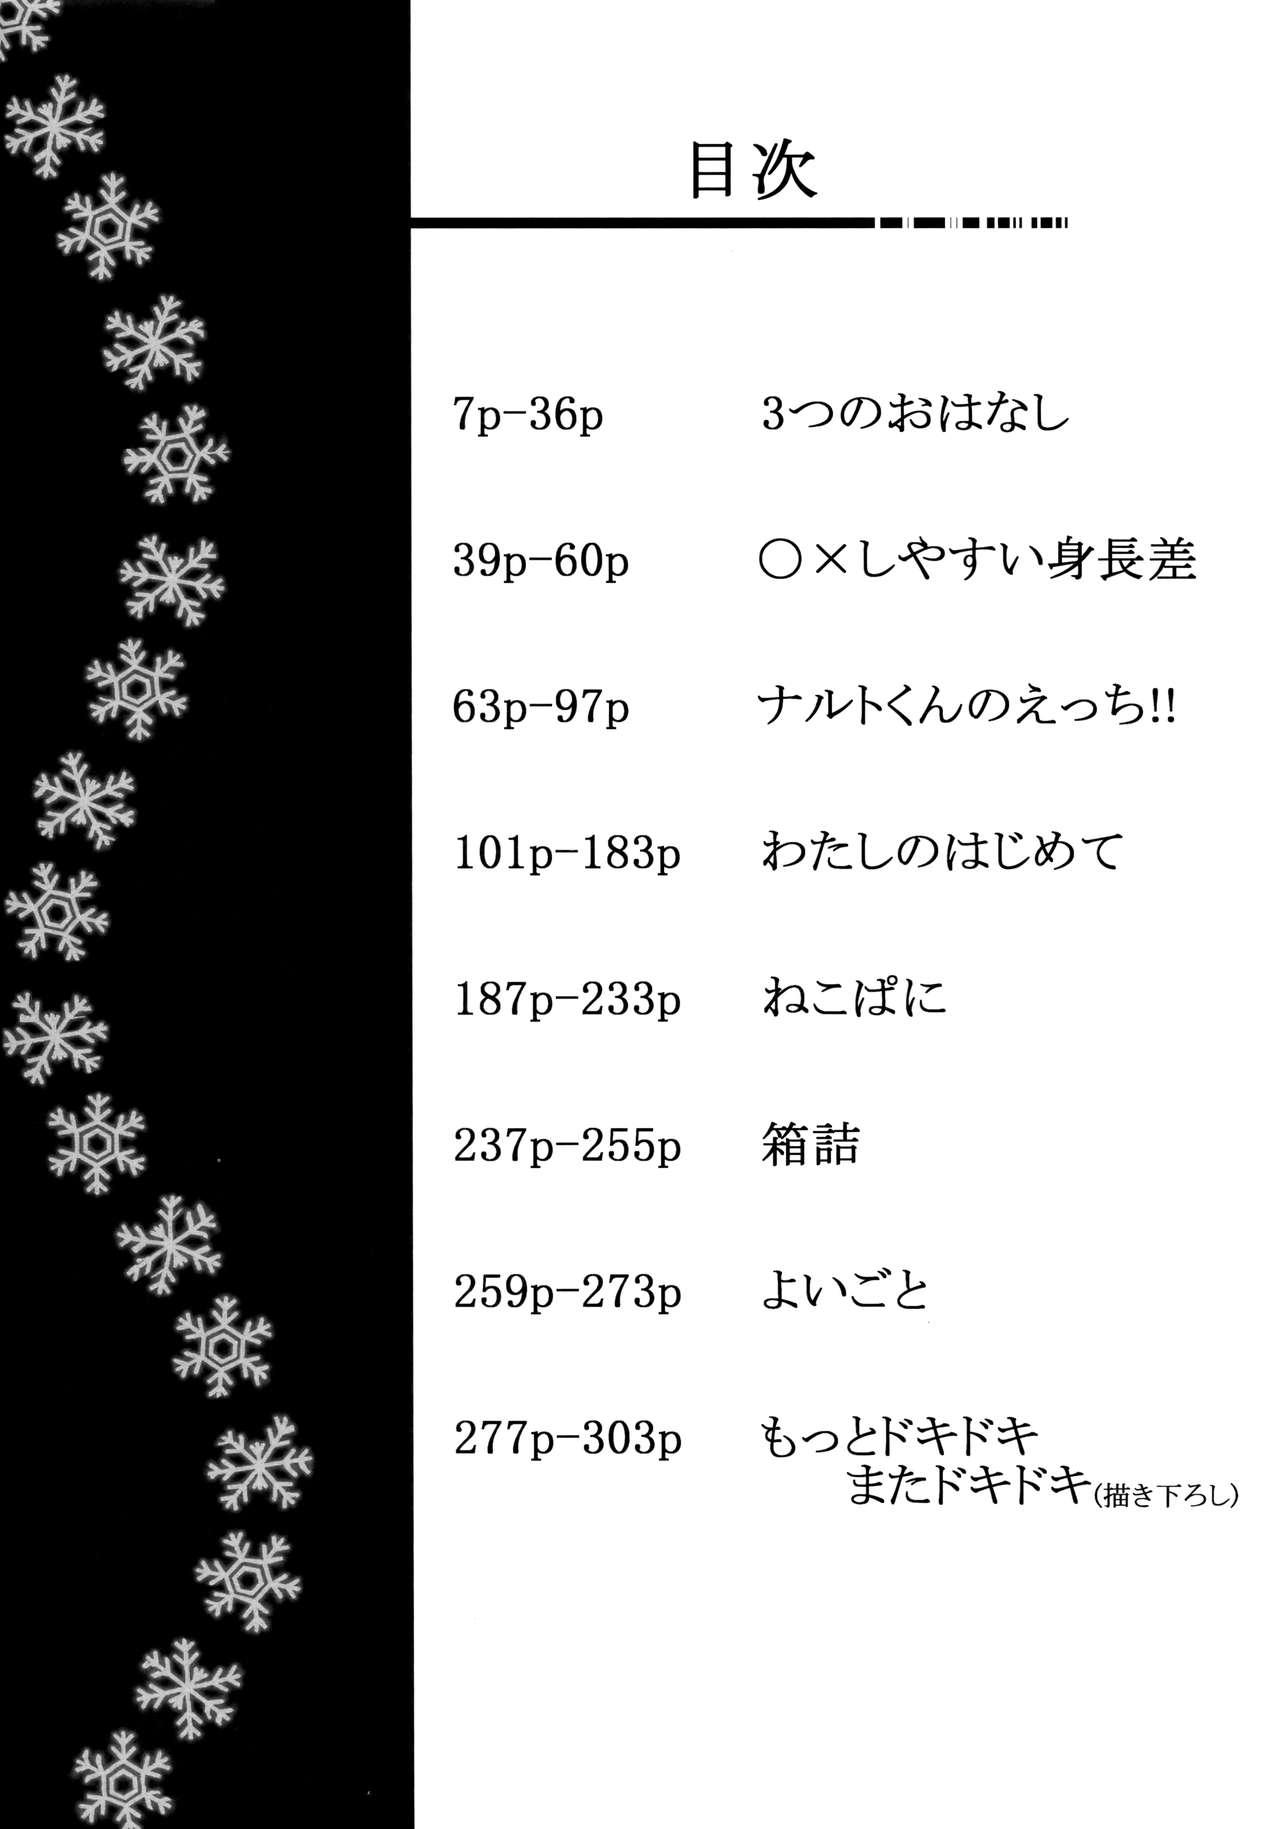 Fuyuiro Memories - Winter Color Memories 3